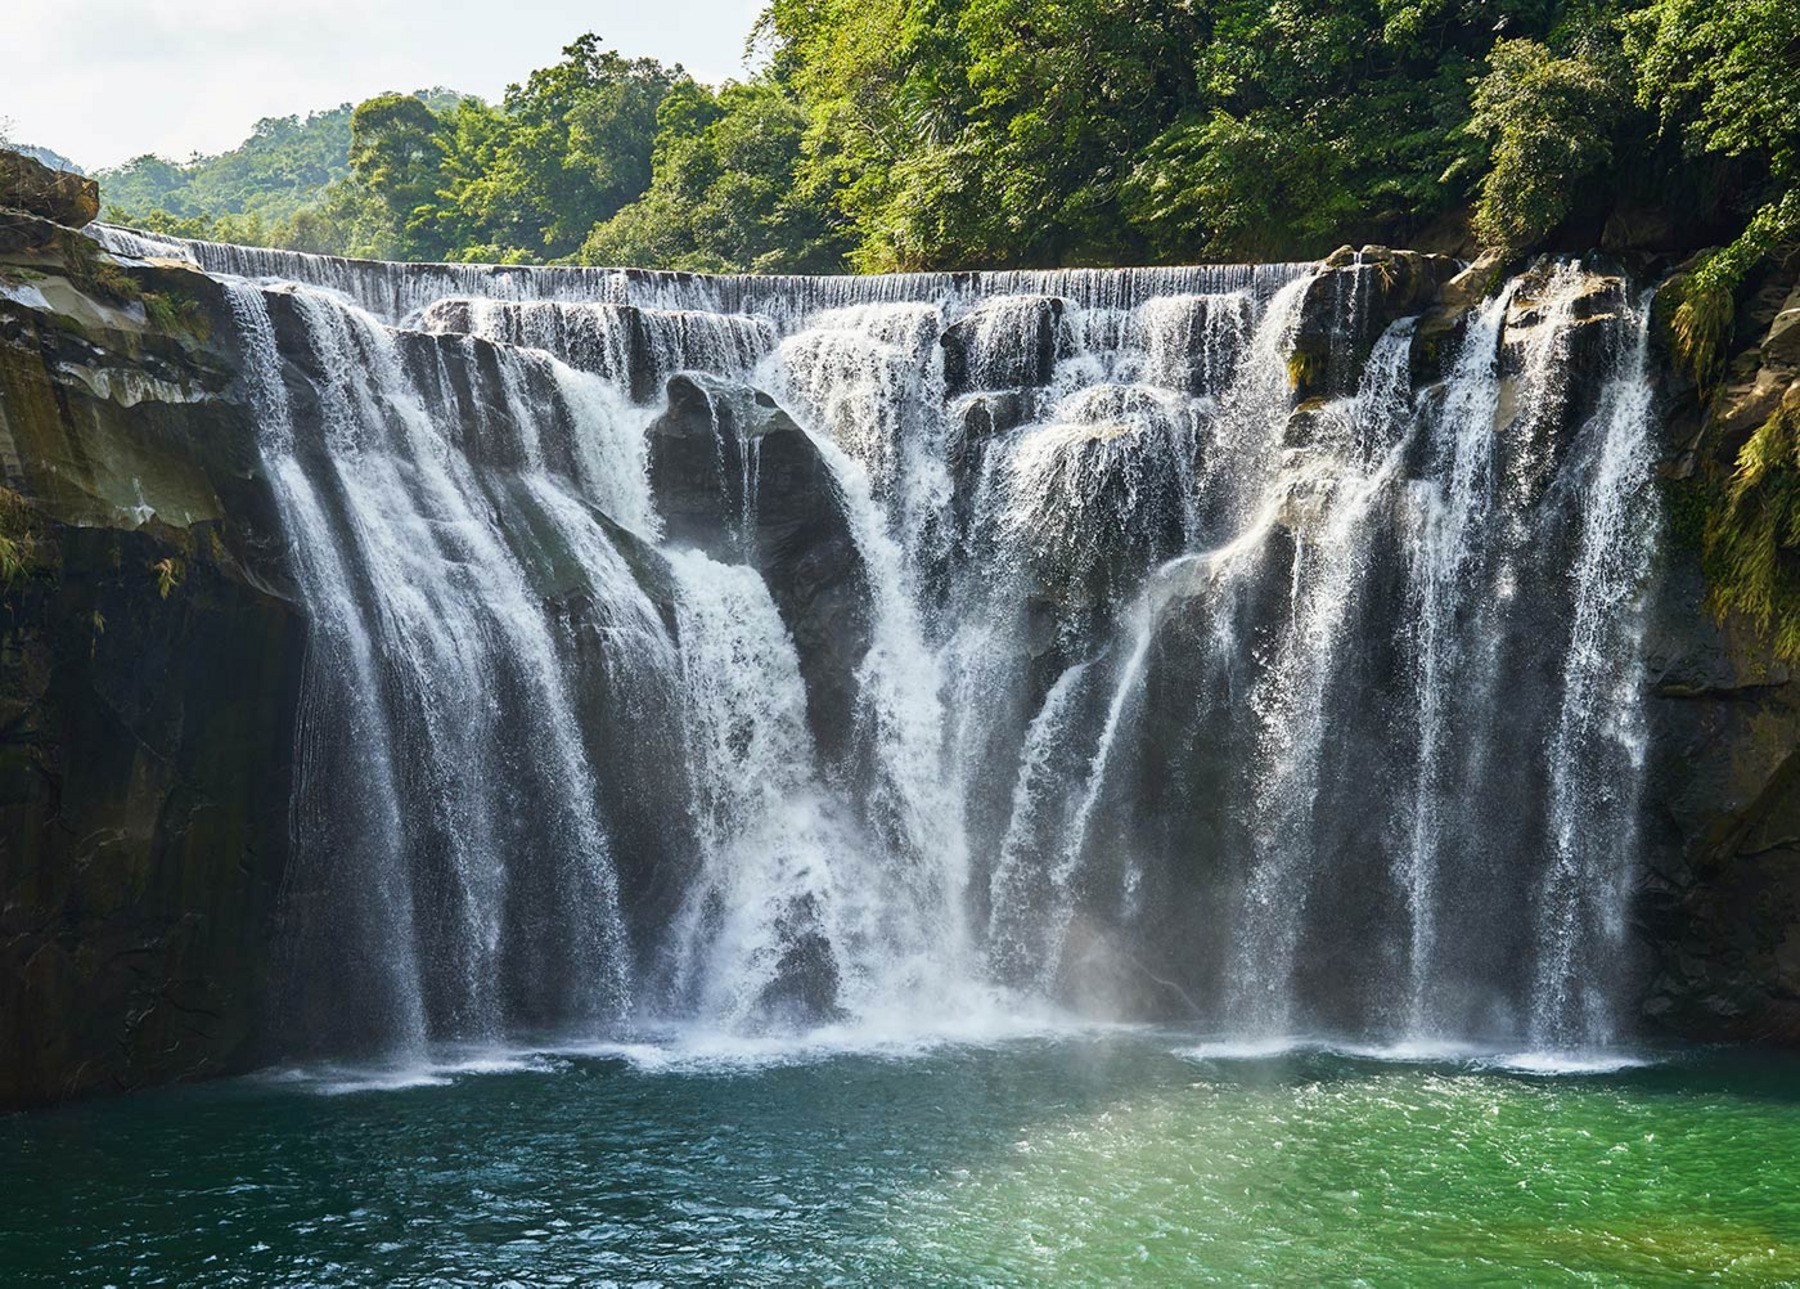 Ein mächtiger Wasserfall inmitten eines sattgrünen Regenwaldes.